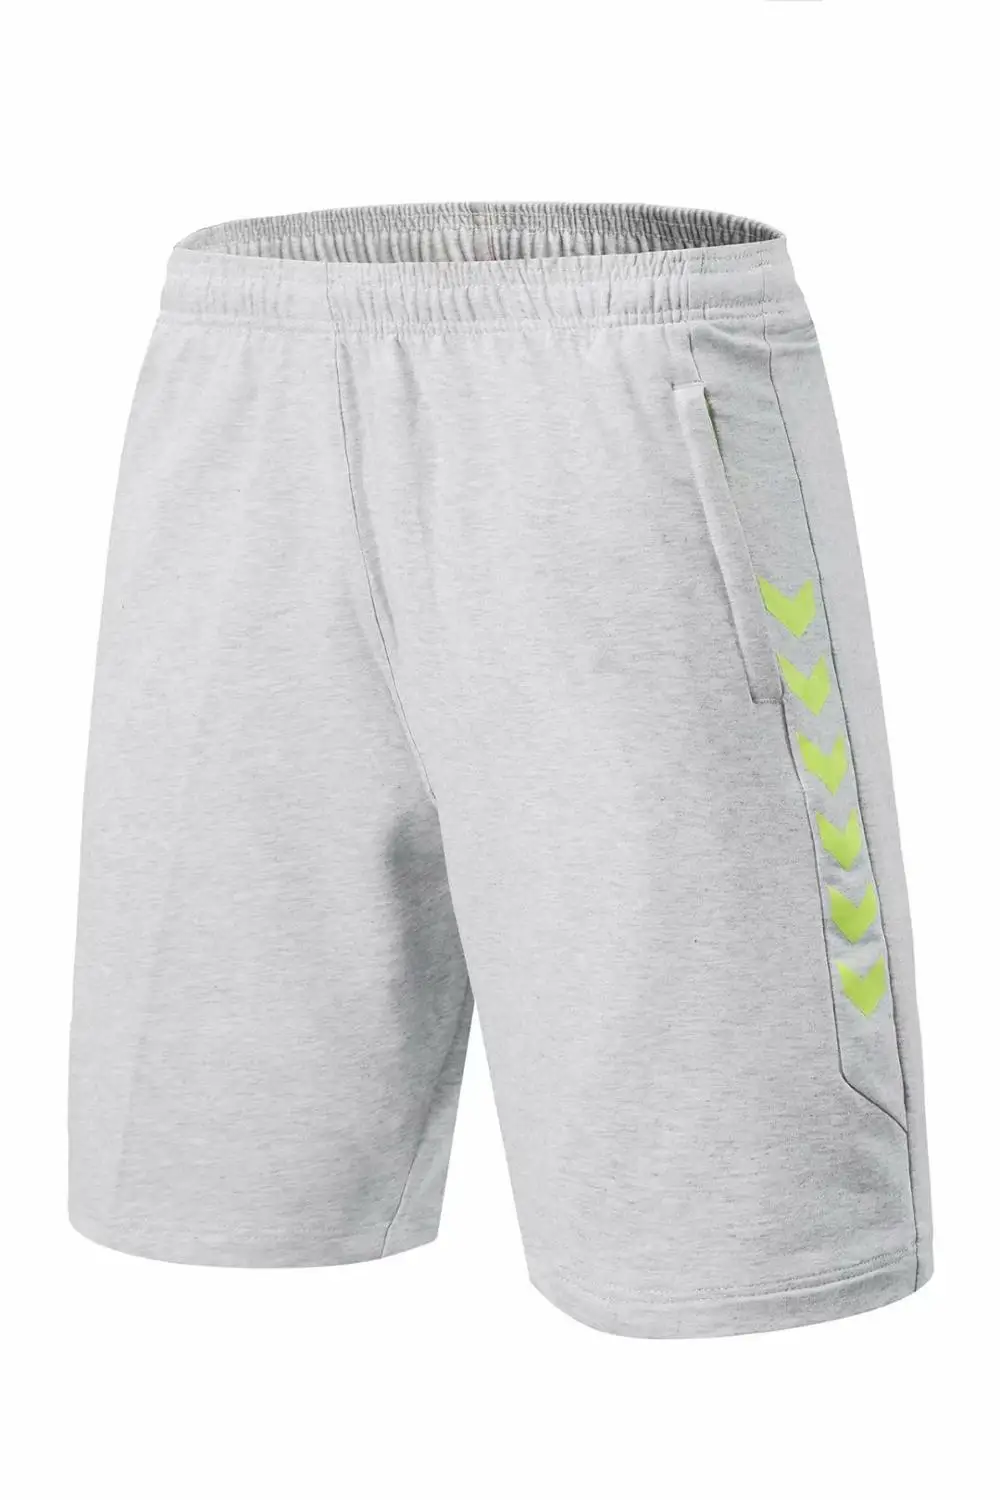 2020 шорты для бадминтона серая спортивная одежда с карманами мужские на молнии